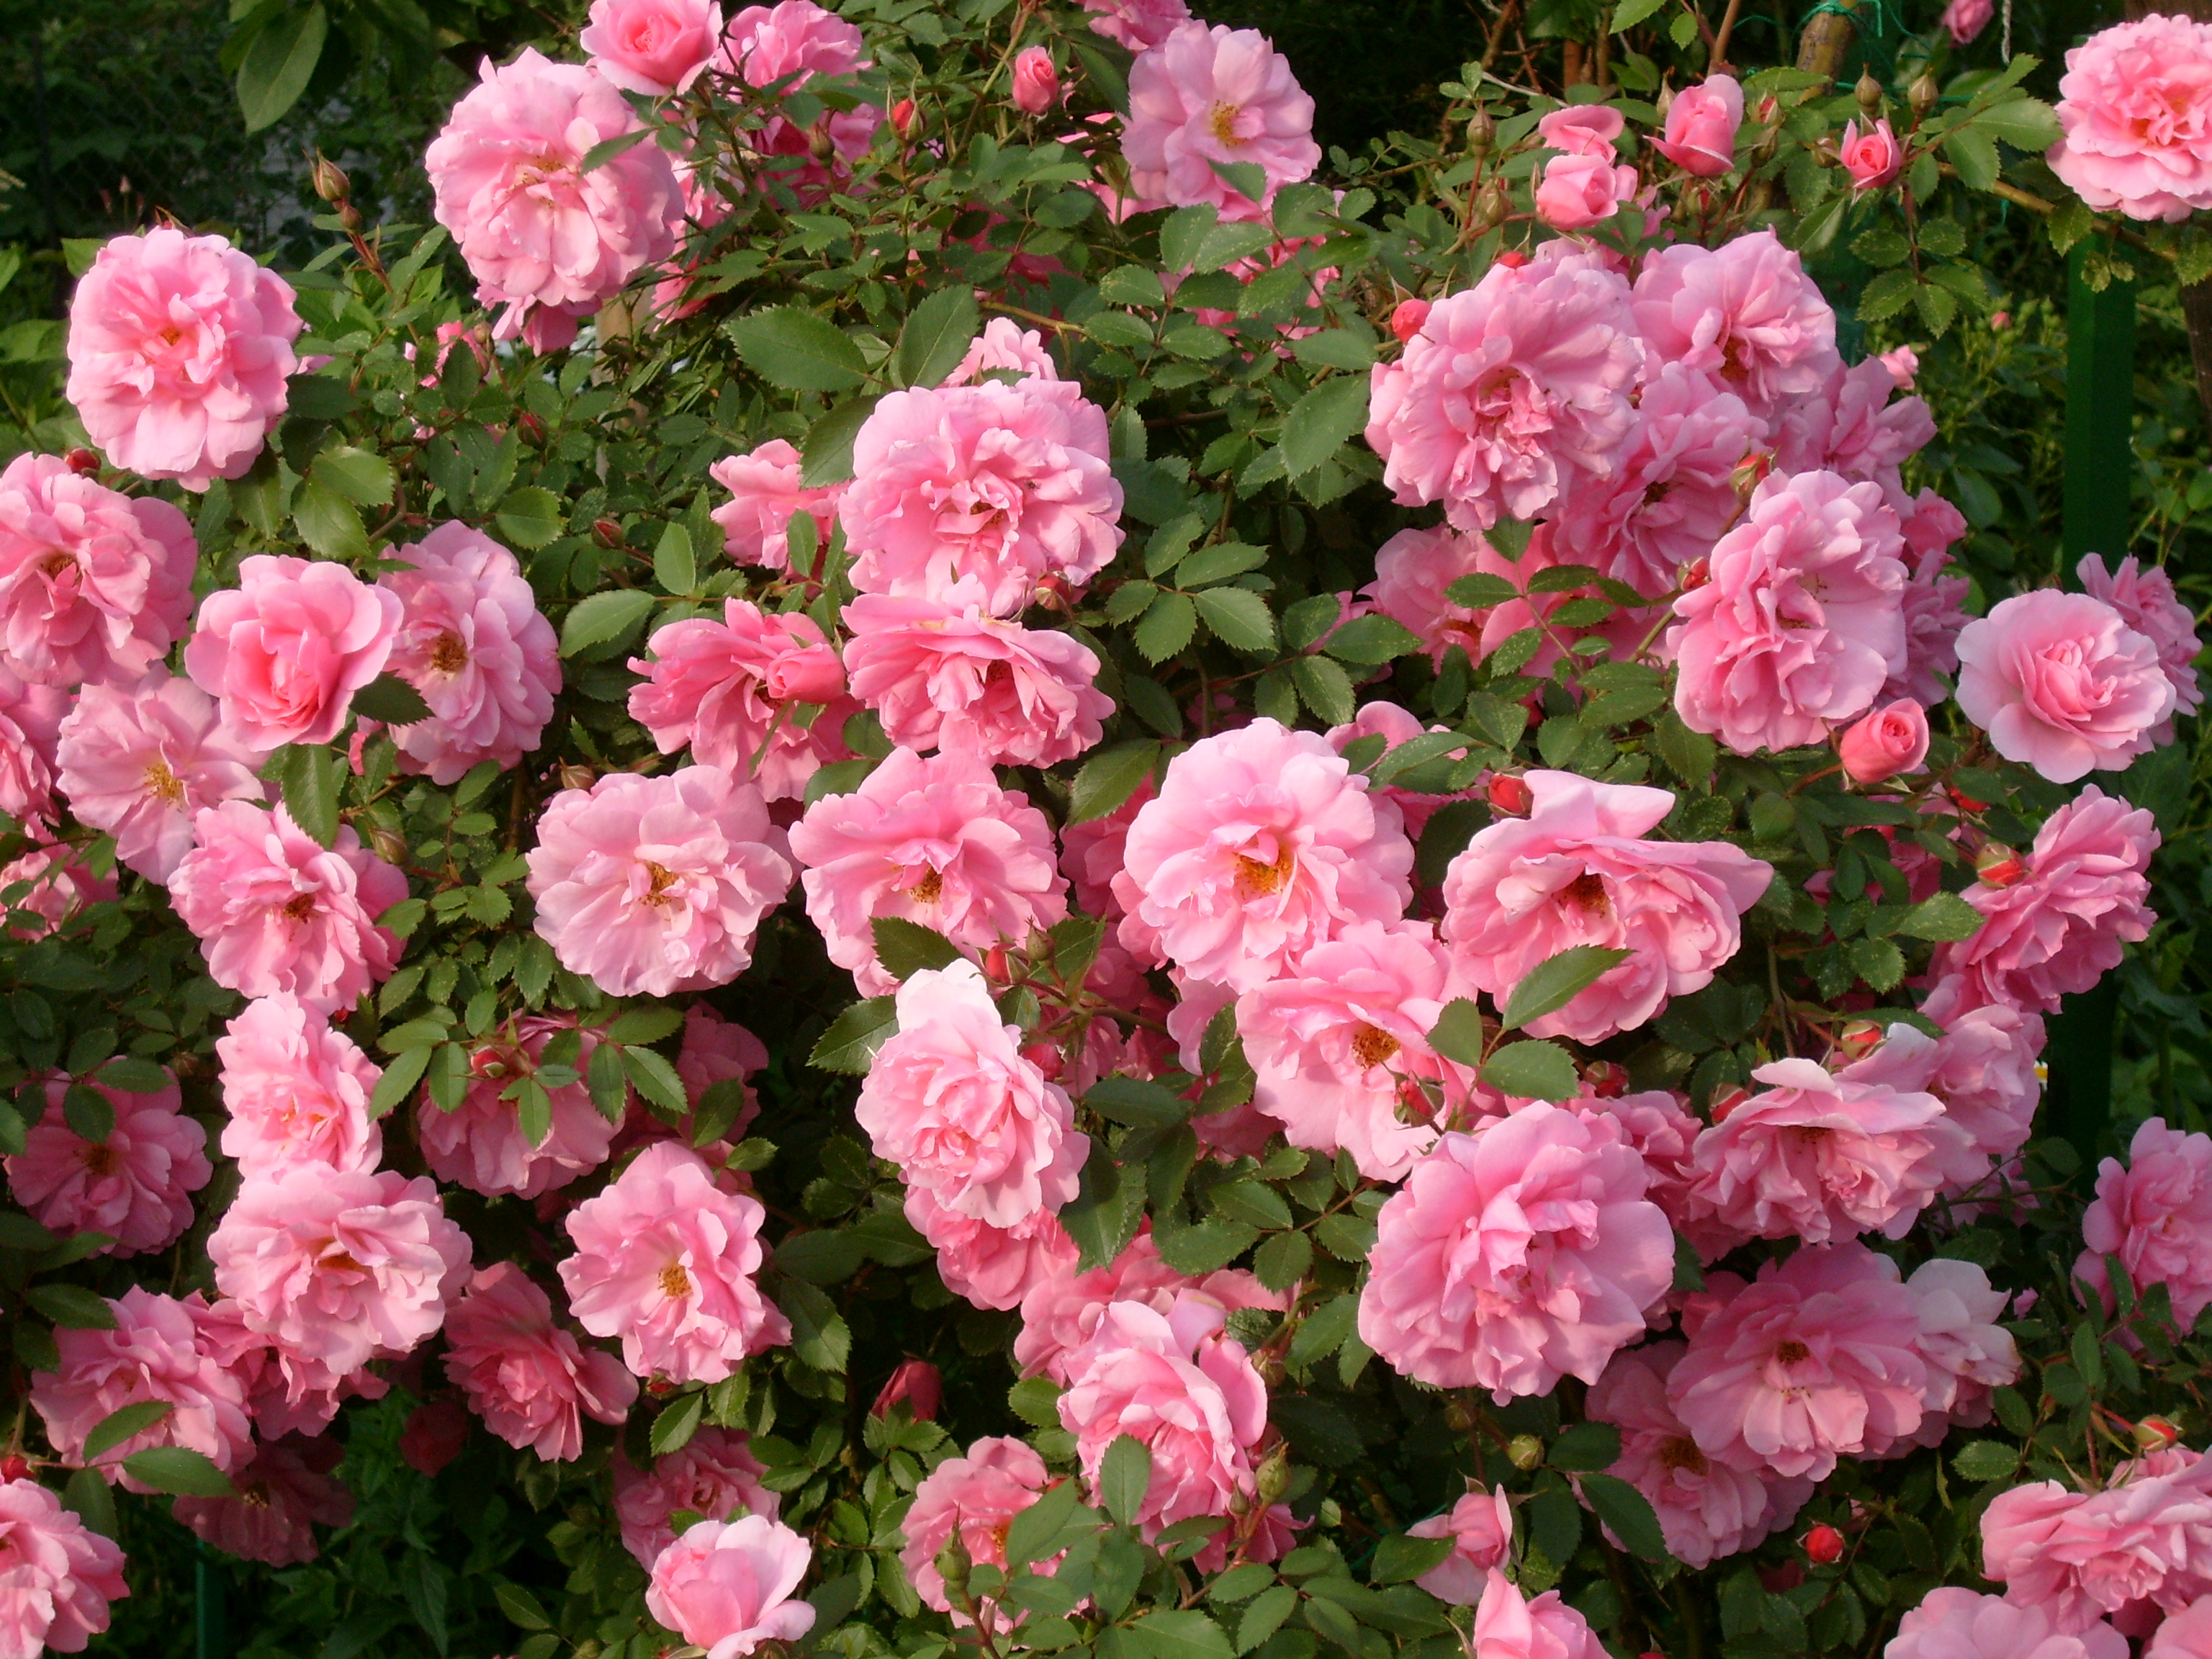 Саженцы розы John Davis (Джон Дэвис) заказать почтой. Купить кусты канадские розы John Davis (Джон Дэвис) в интернет-магазине.